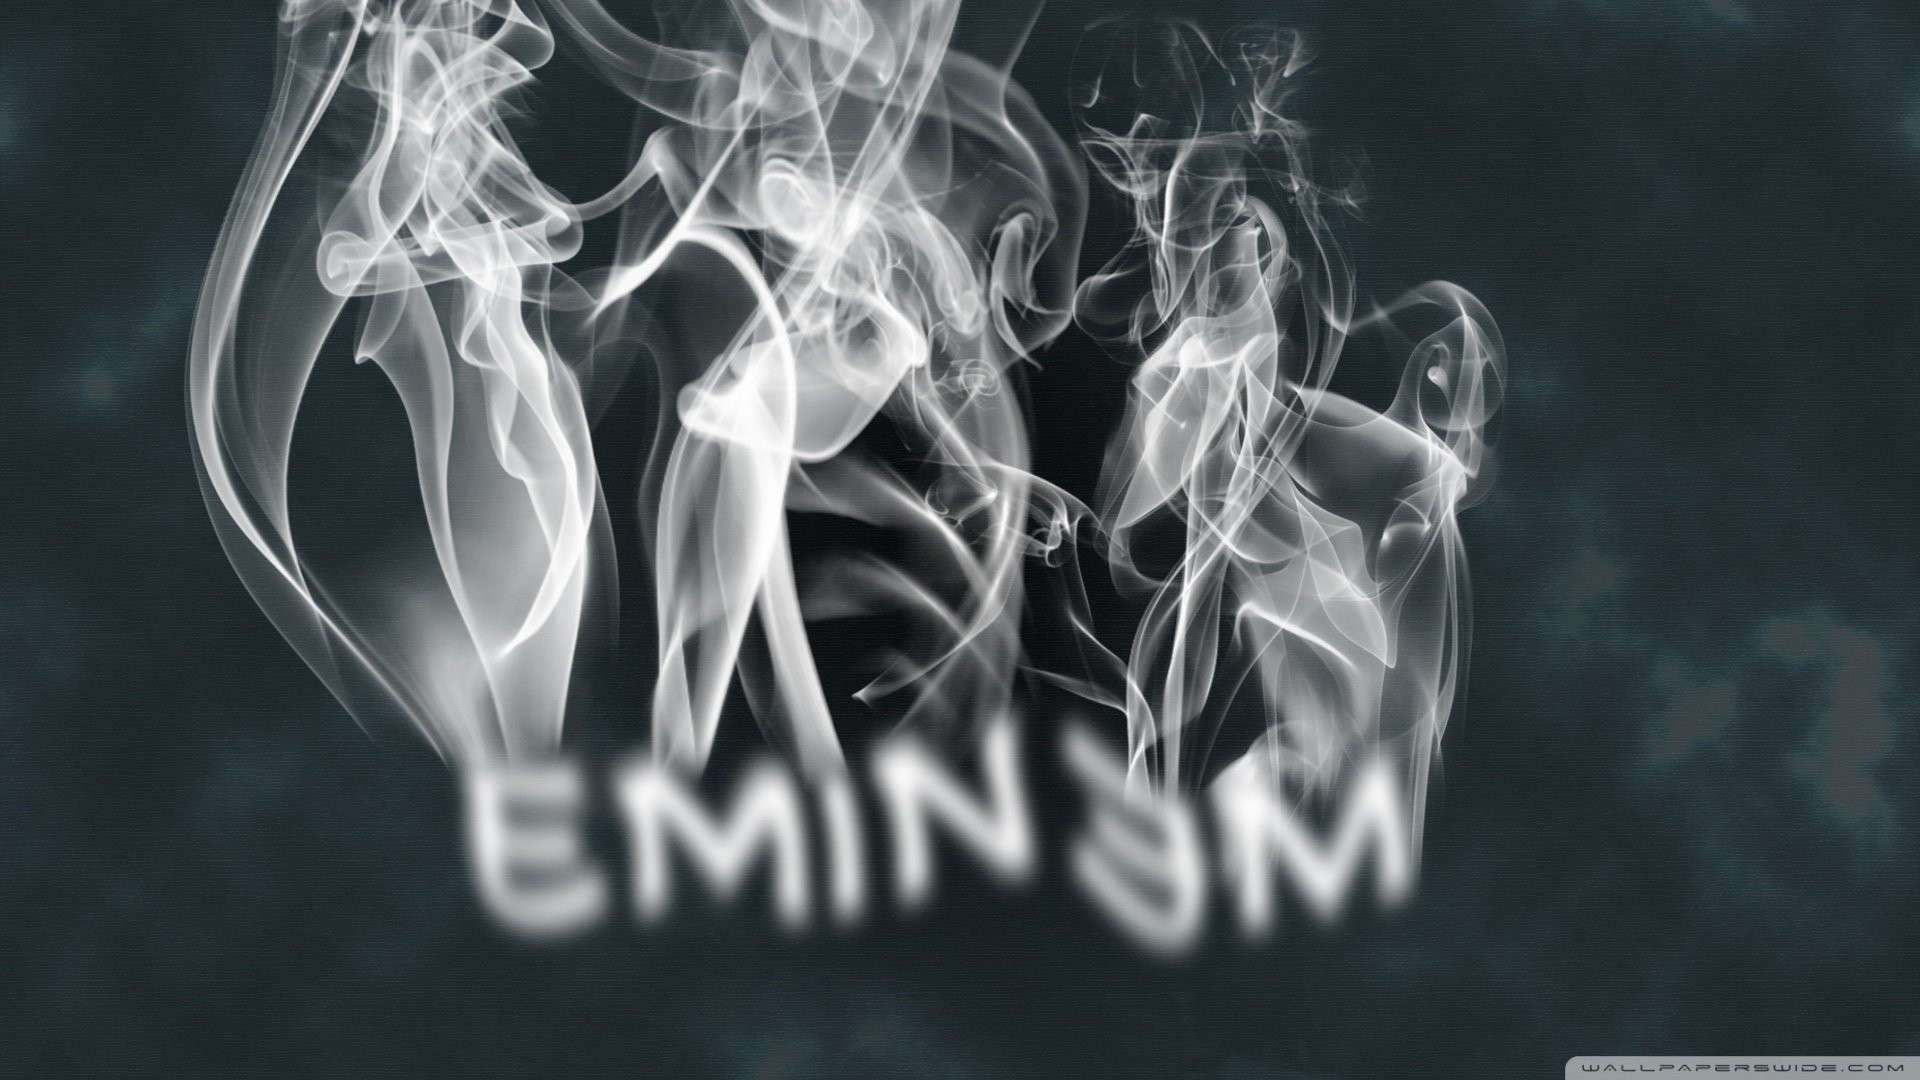 1920x1080 Eminem 2-wallpaper- wallpaper |  | 290372 | WallpaperUP